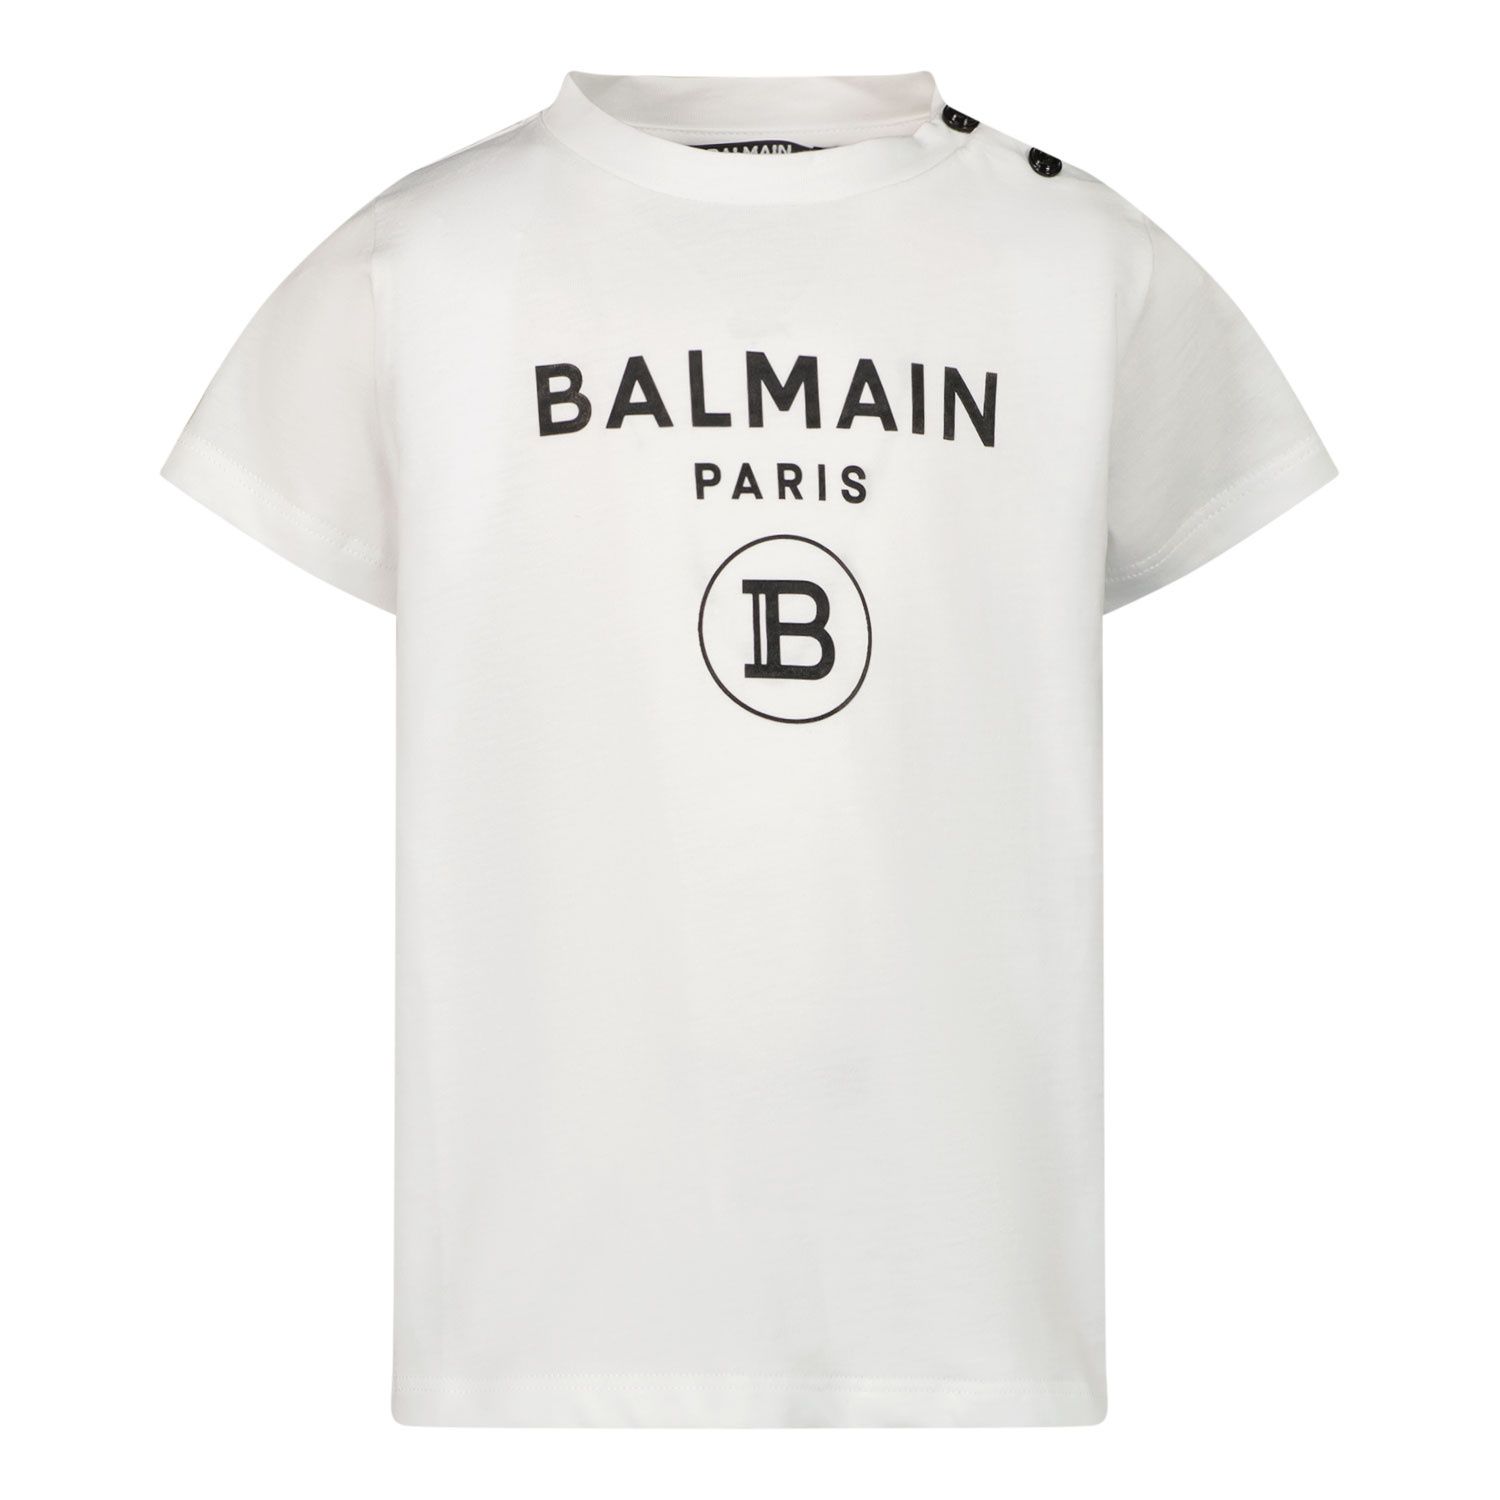 Afbeelding van Balmain 6Q8881 baby t-shirt wit